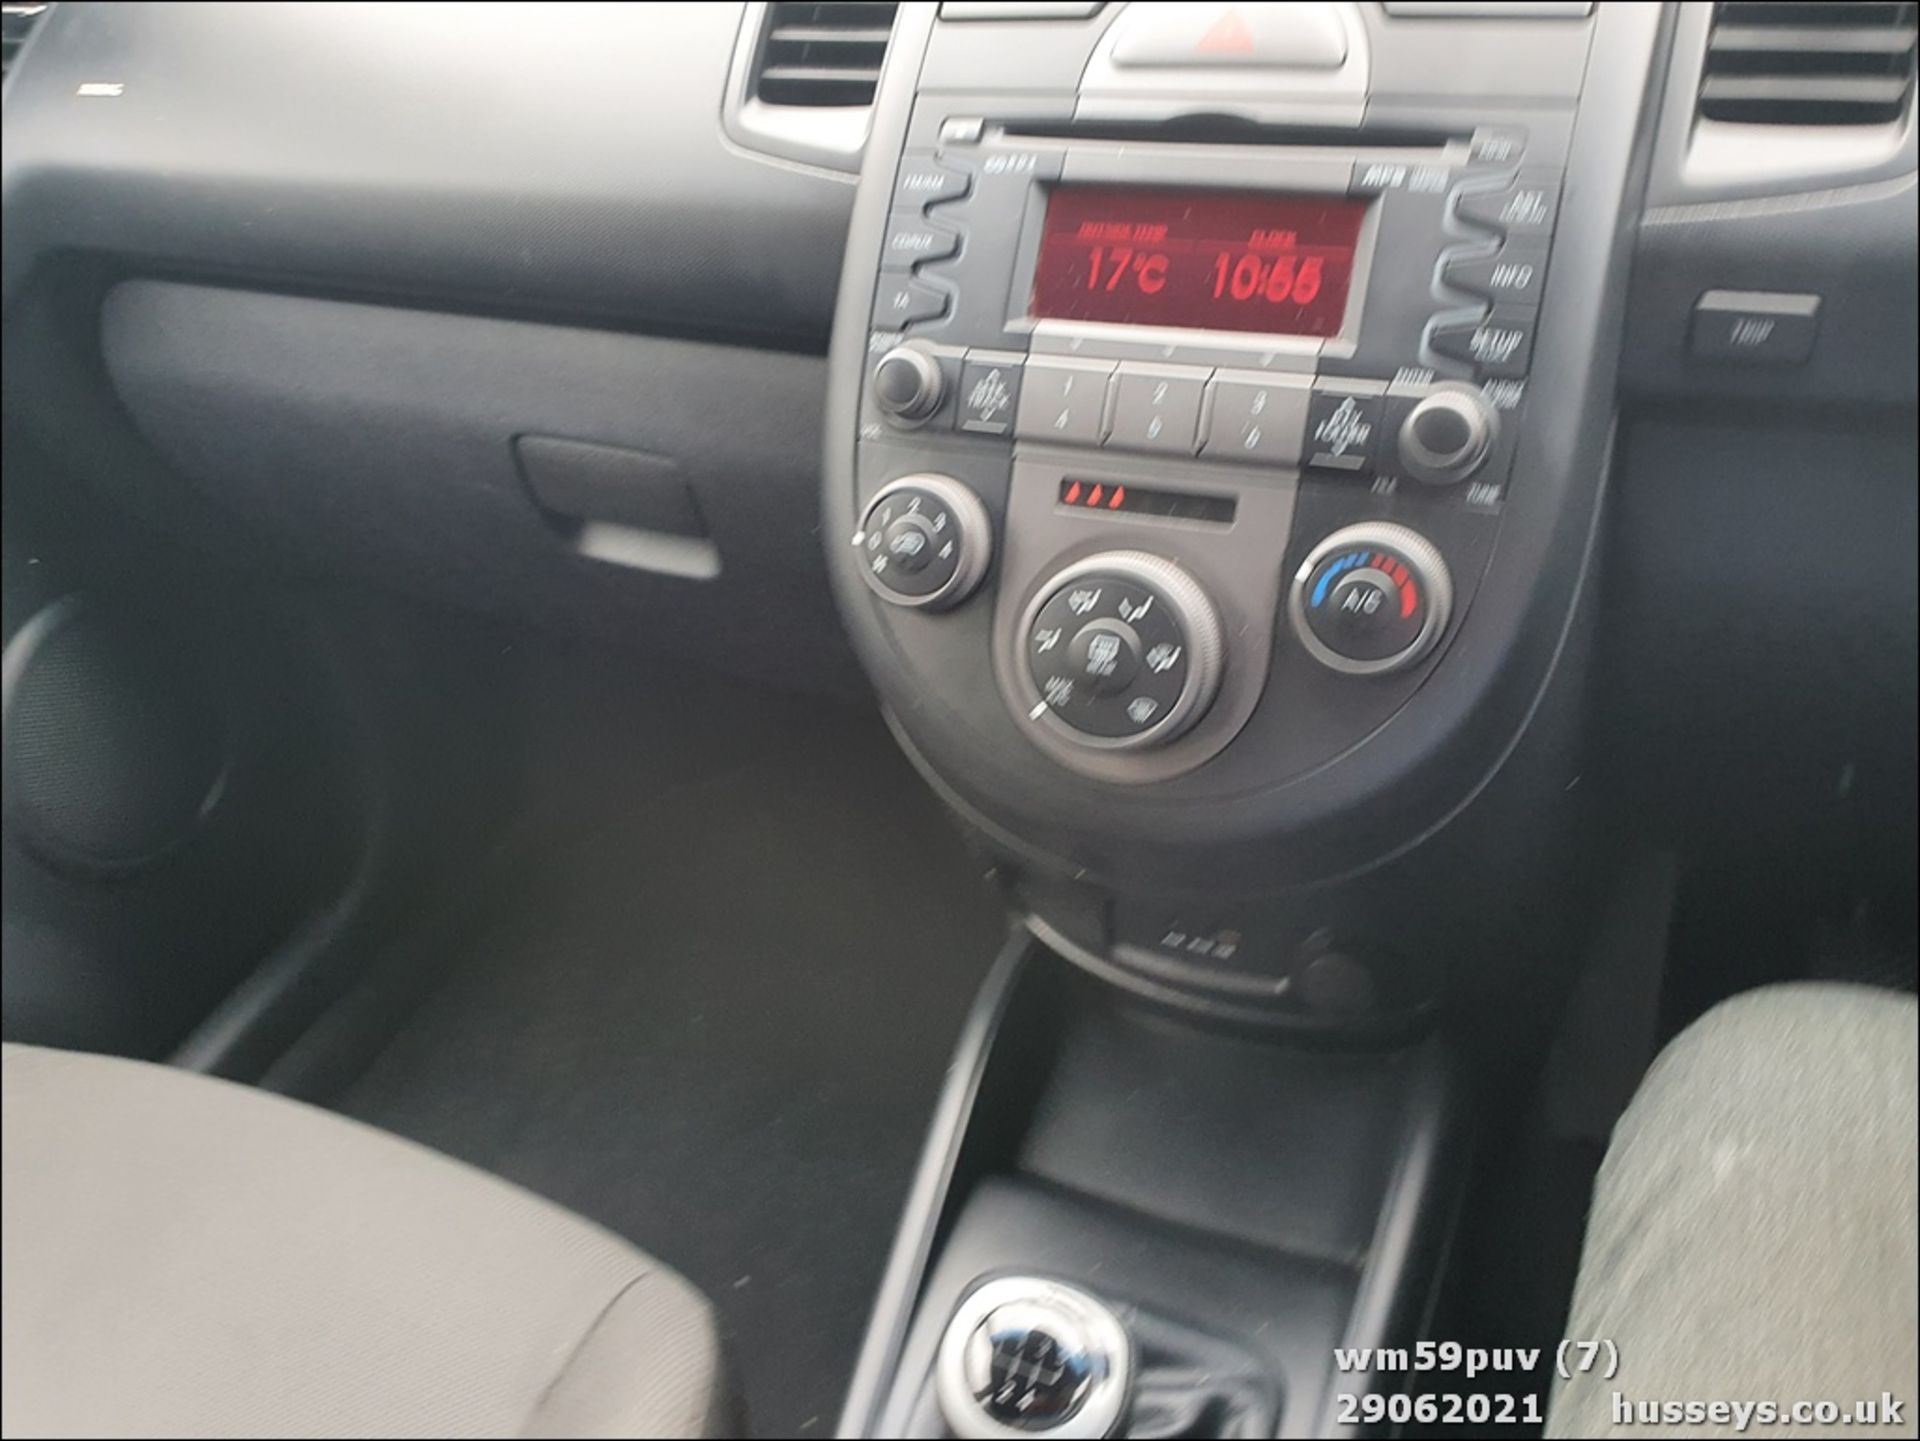 10/59 KIA SOUL 2 CRDI - 1582cc 5dr Hatchback (Orange, 72k) - Image 7 of 15